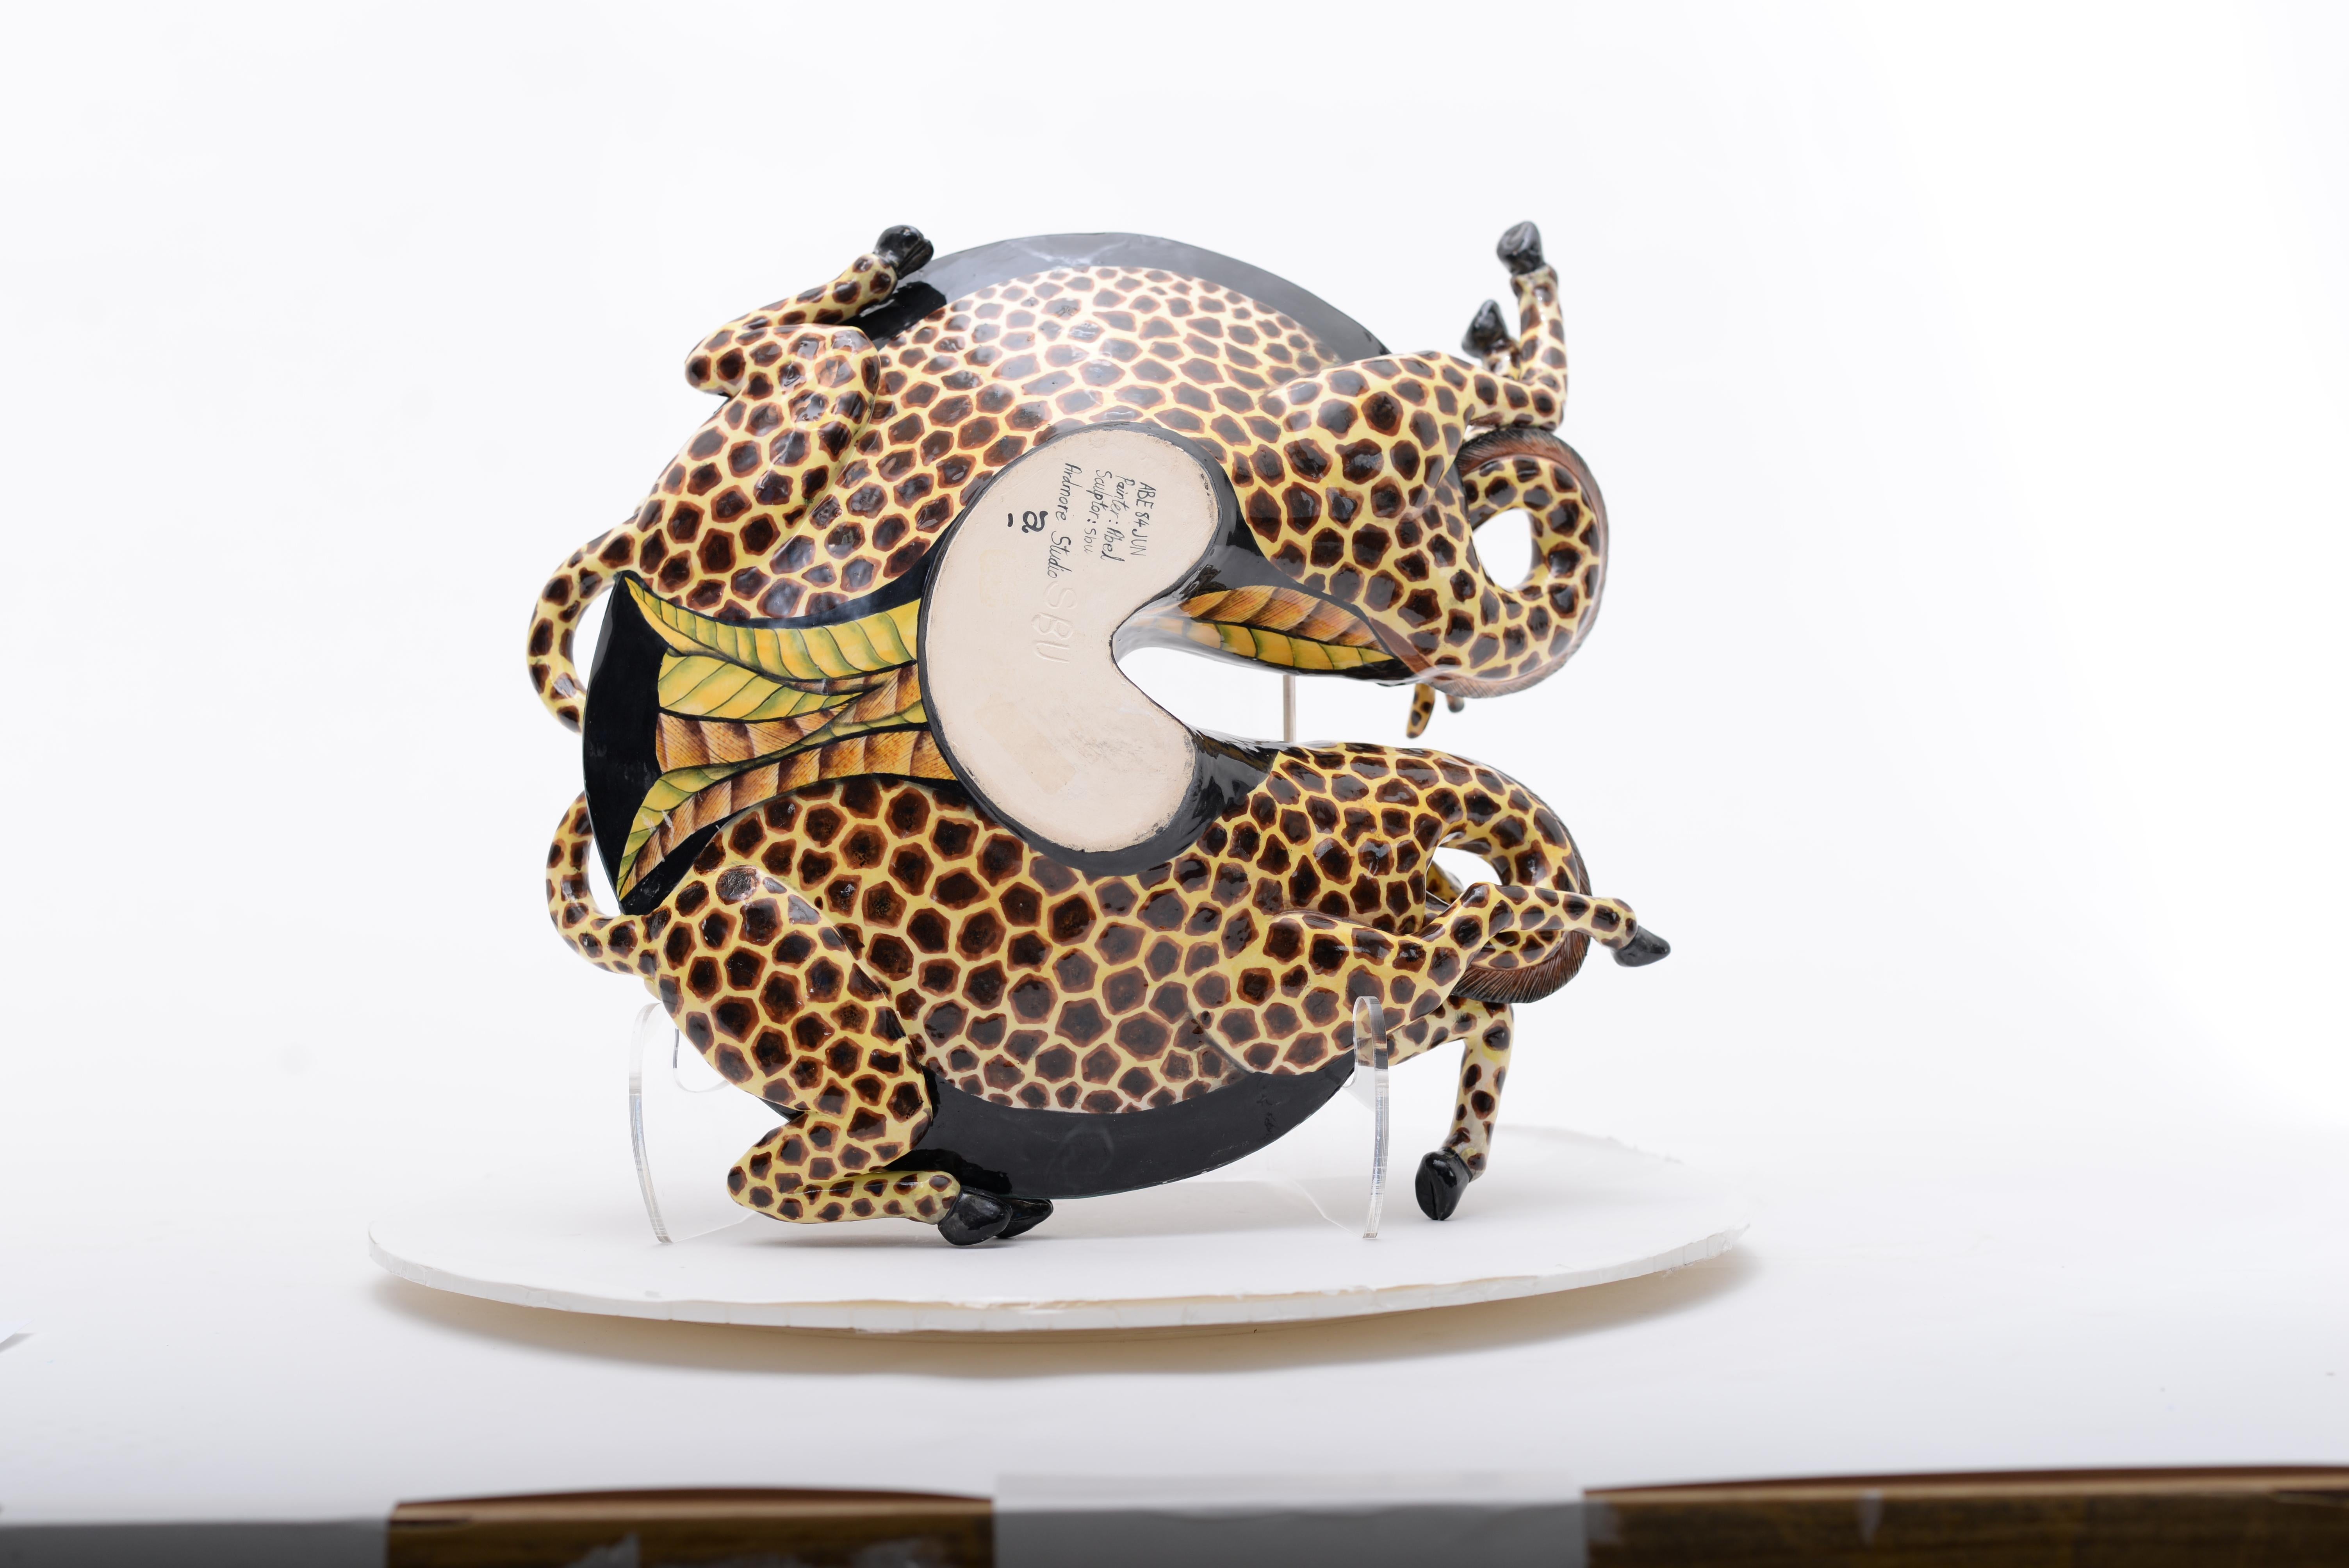 Die Giraffenschale von Ardmore Ceramics, ein in Südafrika hergestelltes Meisterwerk. Mit einer Höhe von 7 Inch, einer Länge von 15 Inch und einer Breite von 16 Inch ist dieses Keramik-Kunstwerk ein Zeugnis für die Kunstfertigkeit von Sbusiso Ndaba